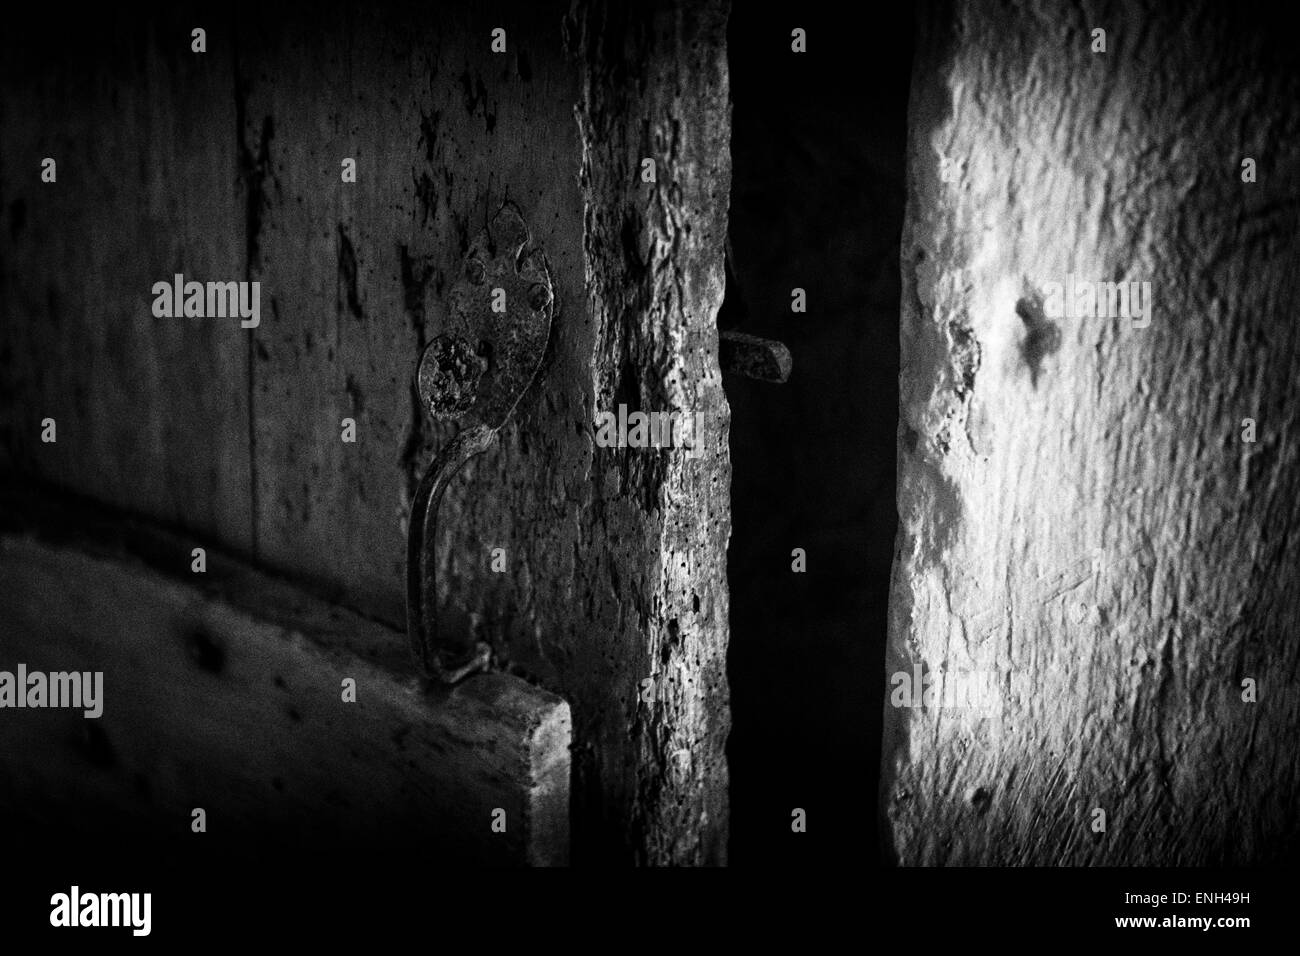 Sehr alte mittelalterliche Tür in schwarz und weiß, halb offen, vielleicht ein Geheimnis oder ein Geheimnis hinter zum Ausdruck bringen. Stockfoto